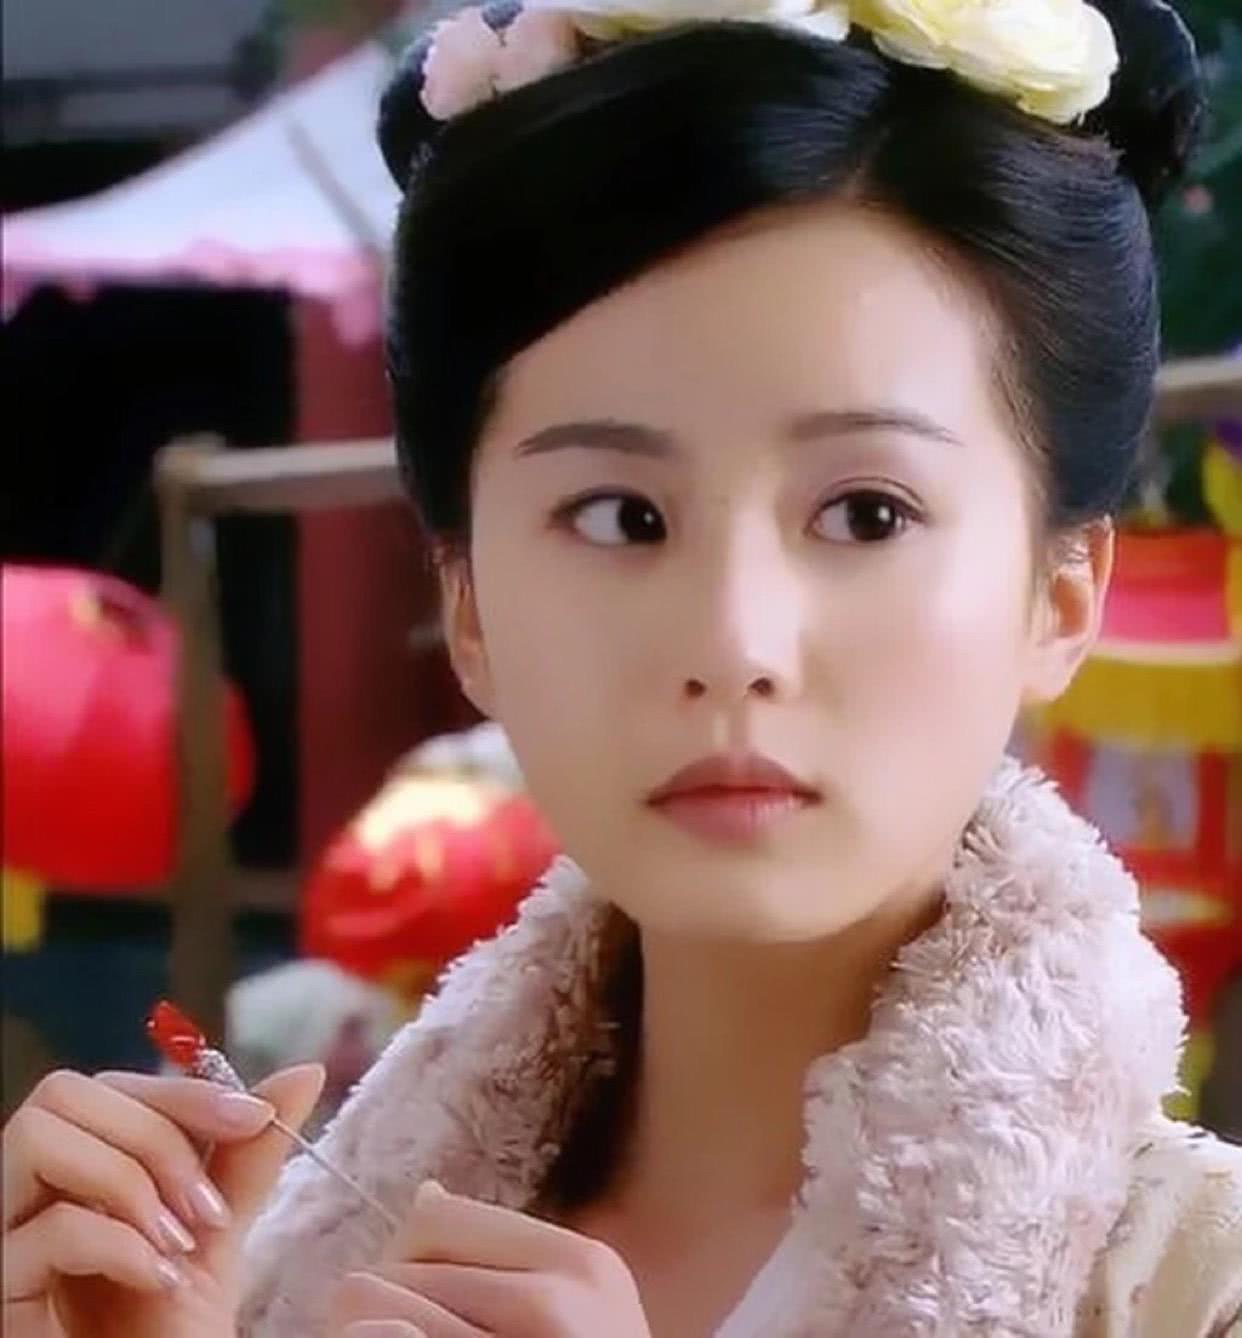 刘诗诗最美的一个角色宛如仙女,也是演技最好的一次